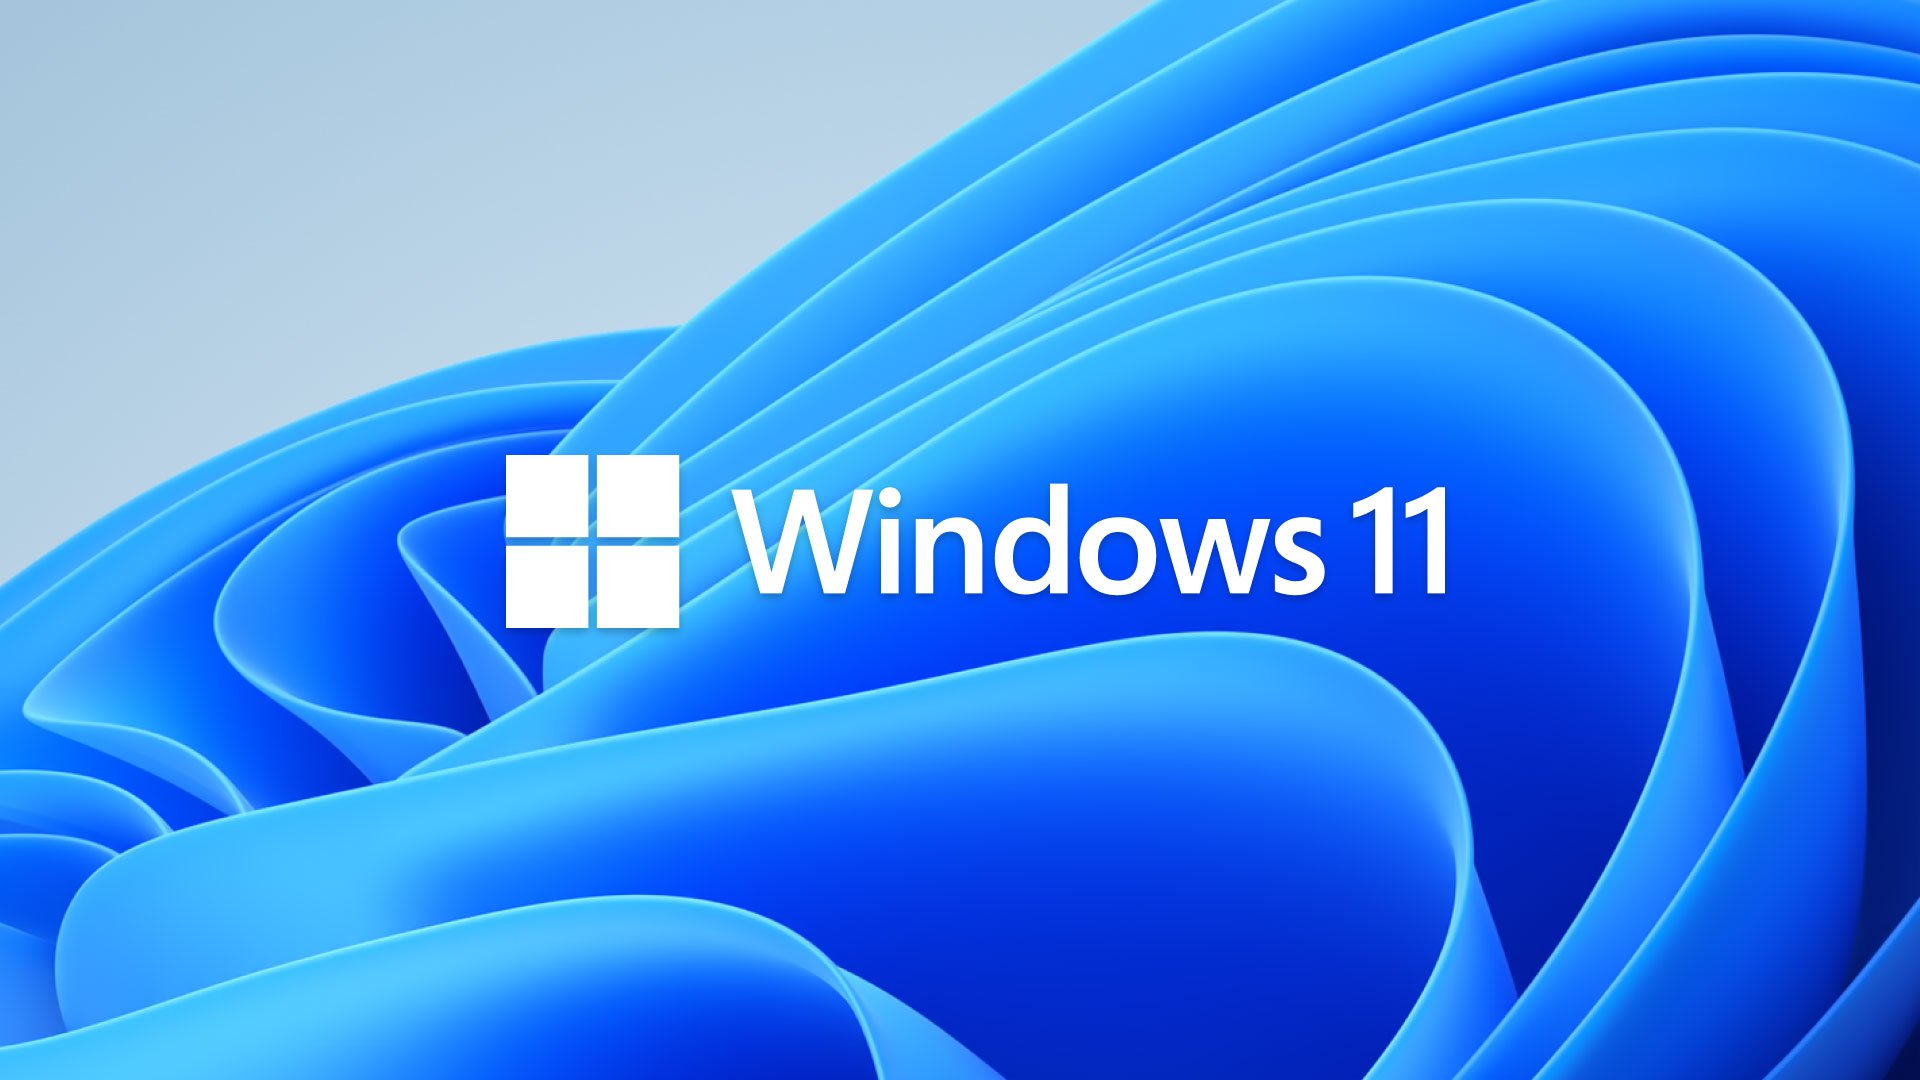  Μεγάλη προσοχή μην την πατήσετε! Χρήστες λαμβάνουν κακόβουλο λογισμικό από πλαστά προγράμματα εγκατάστασης των Windows 11!